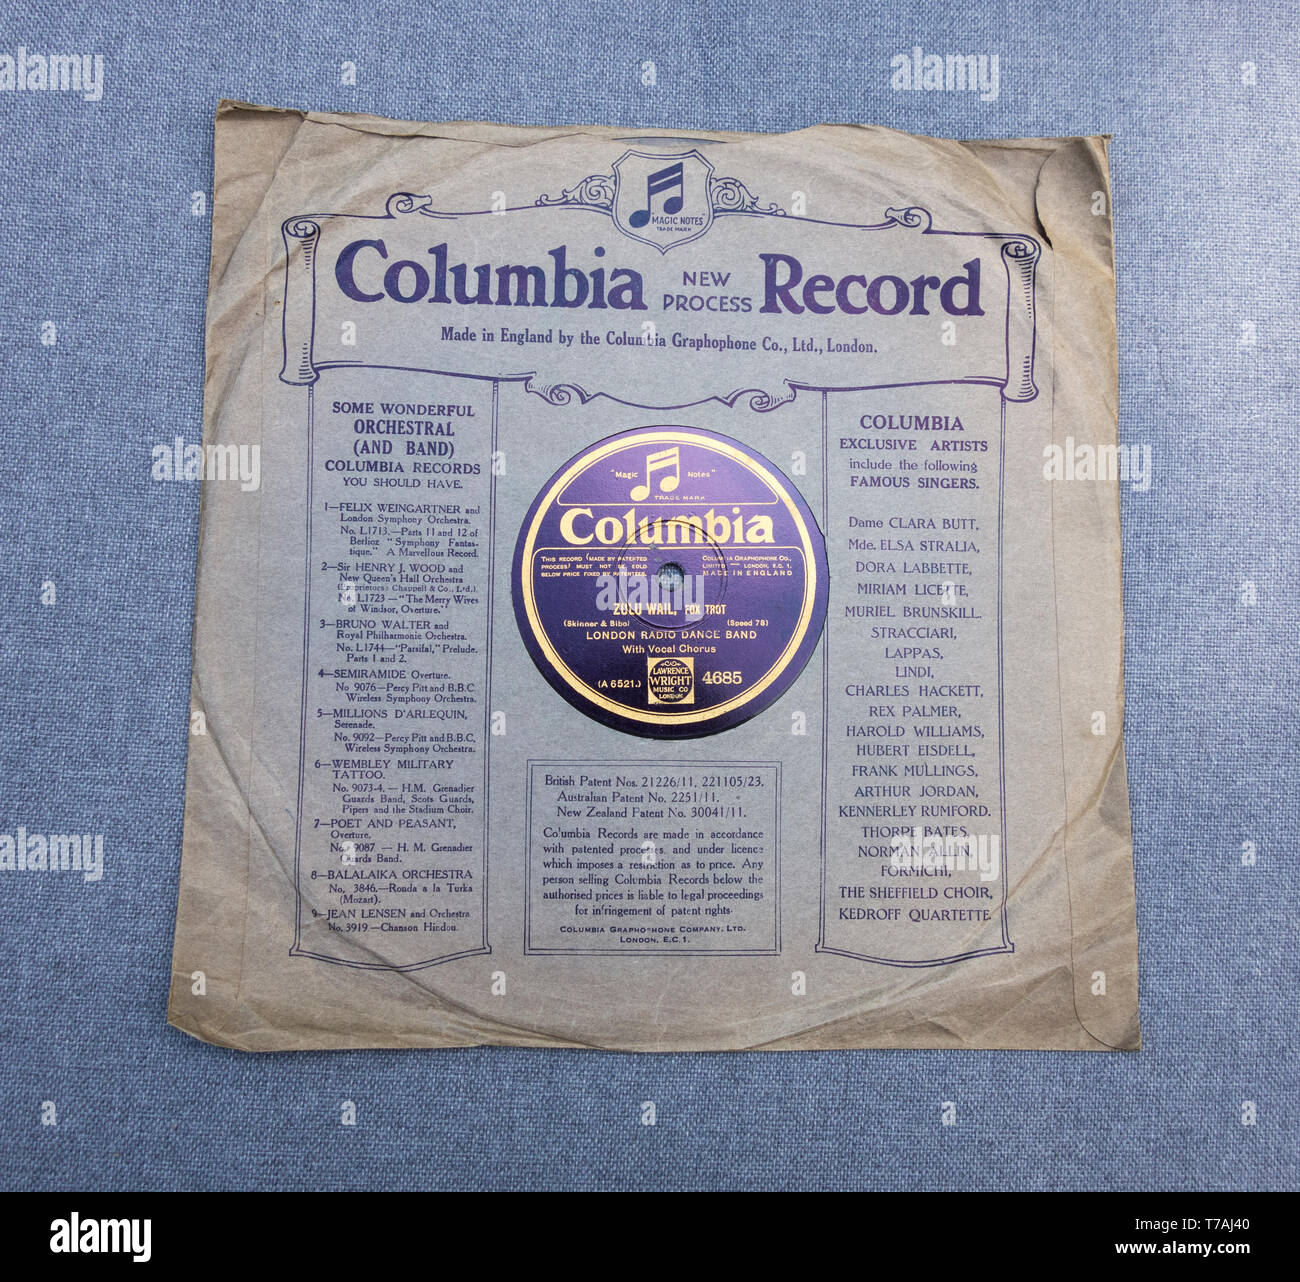 Columbia Gramophone compañía discográfica con pared Zulu, fox trot con la  London Radio banda de baile en un viejo disco de 78 revoluciones por minuto  Fotografía de stock - Alamy